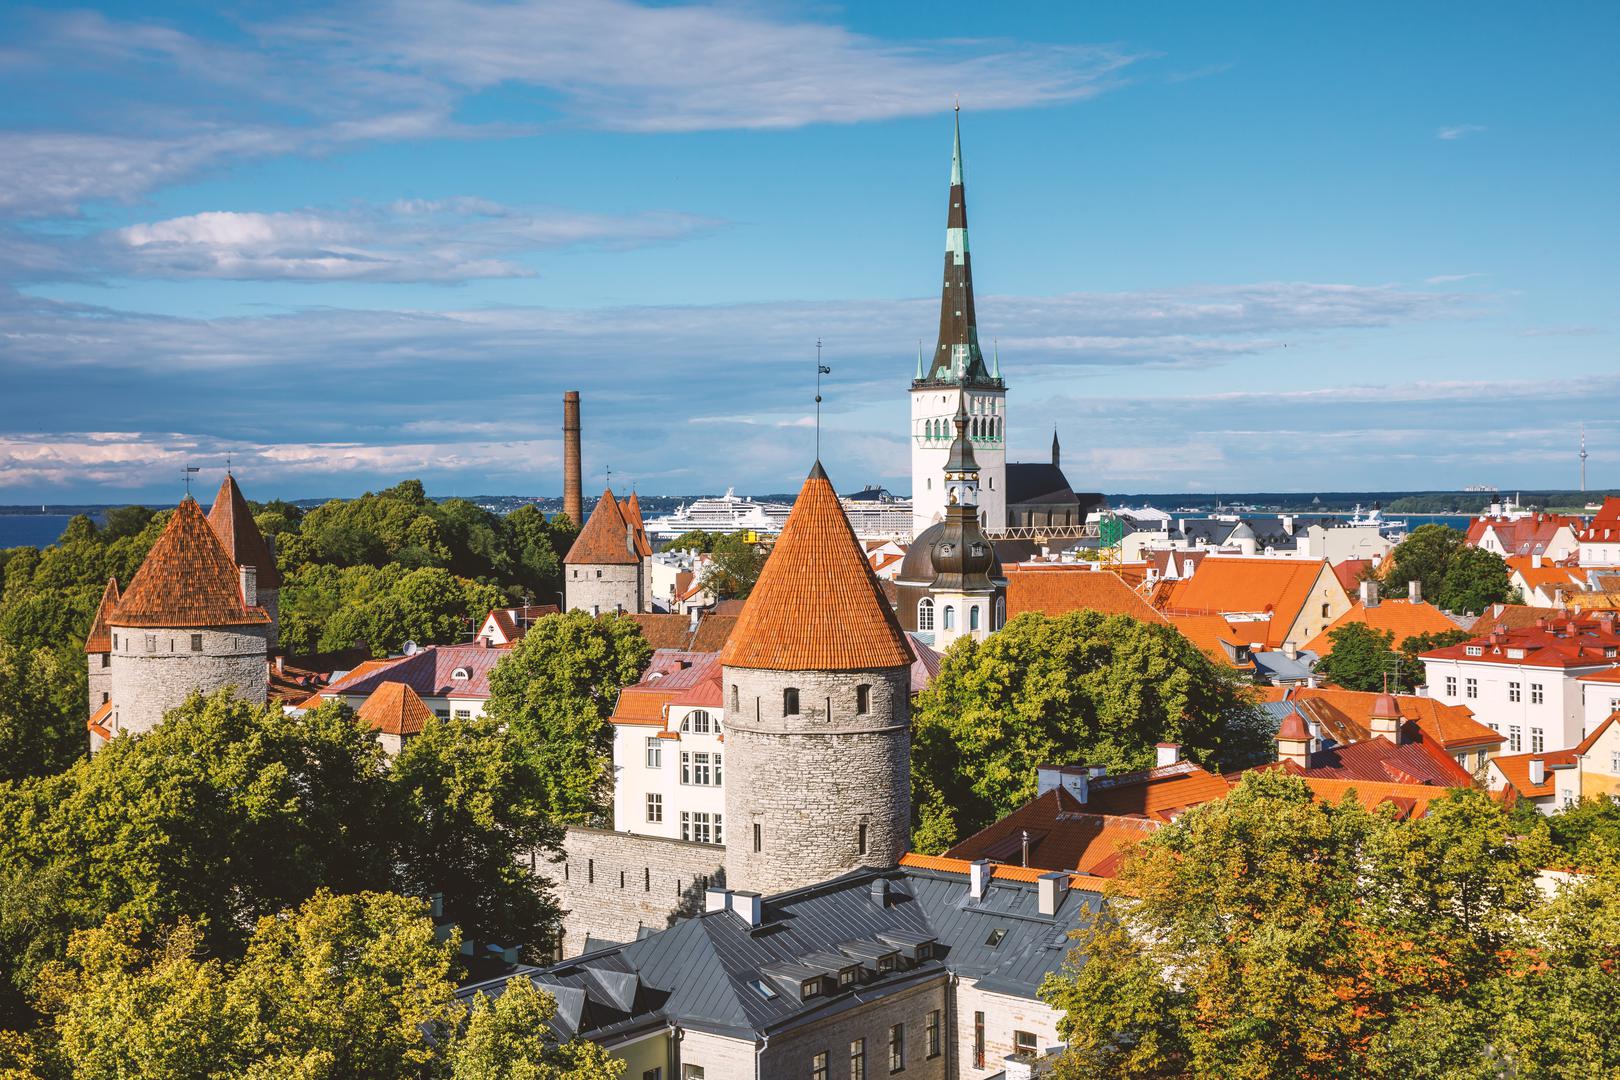 9. Estonija: Estonija je možda malo izvan radara mnogih turista, ali prekrasna baltička zemlja ima mnogo toga za ponuditi. Bilo da se radi o lijepoj prijestolnici, Tallinnu, ili o netaknutoj prirodnoj ljepoti, postoji mnogo razloga da ove godine posjetite Estoniju.